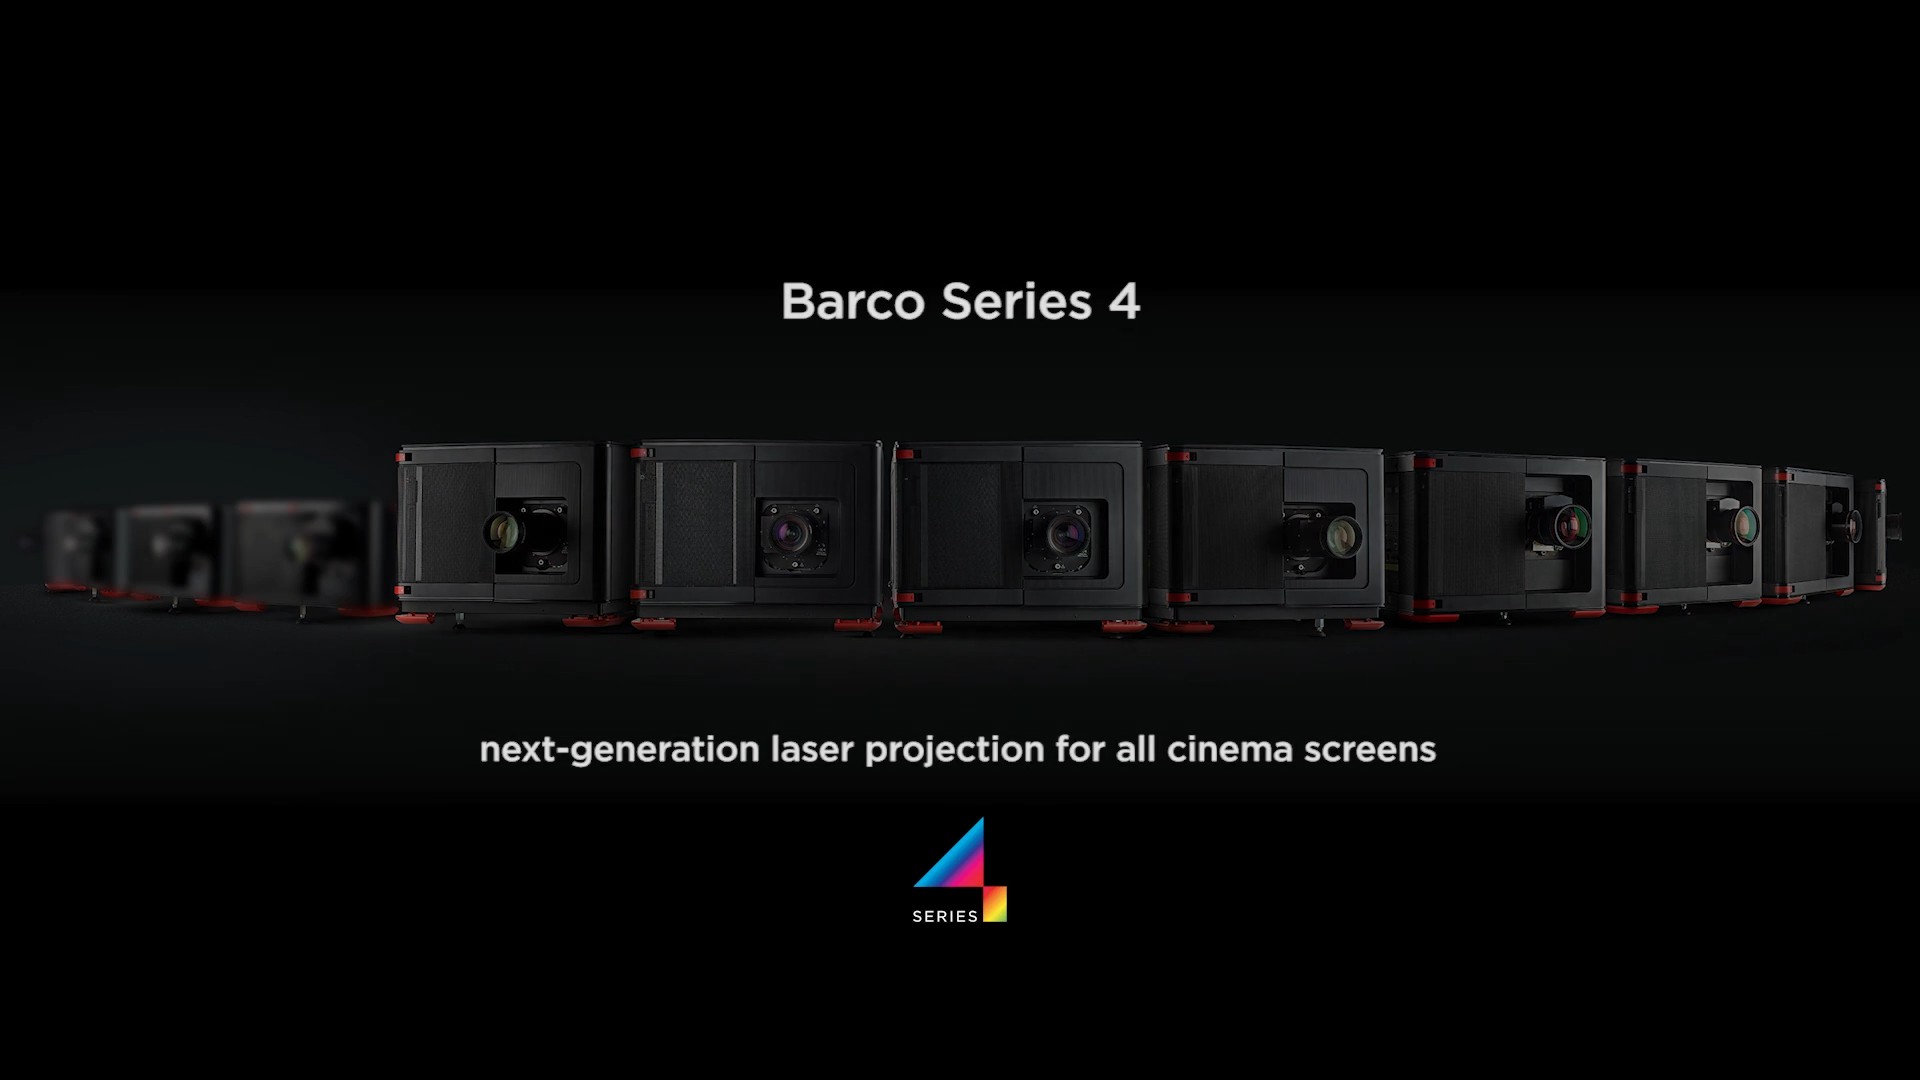 Dòng máy chiếu phim laser Barco Series 4 cho các màn hình nhỏ được công bố hồi tháng 10 năm 2020 của Cinionic